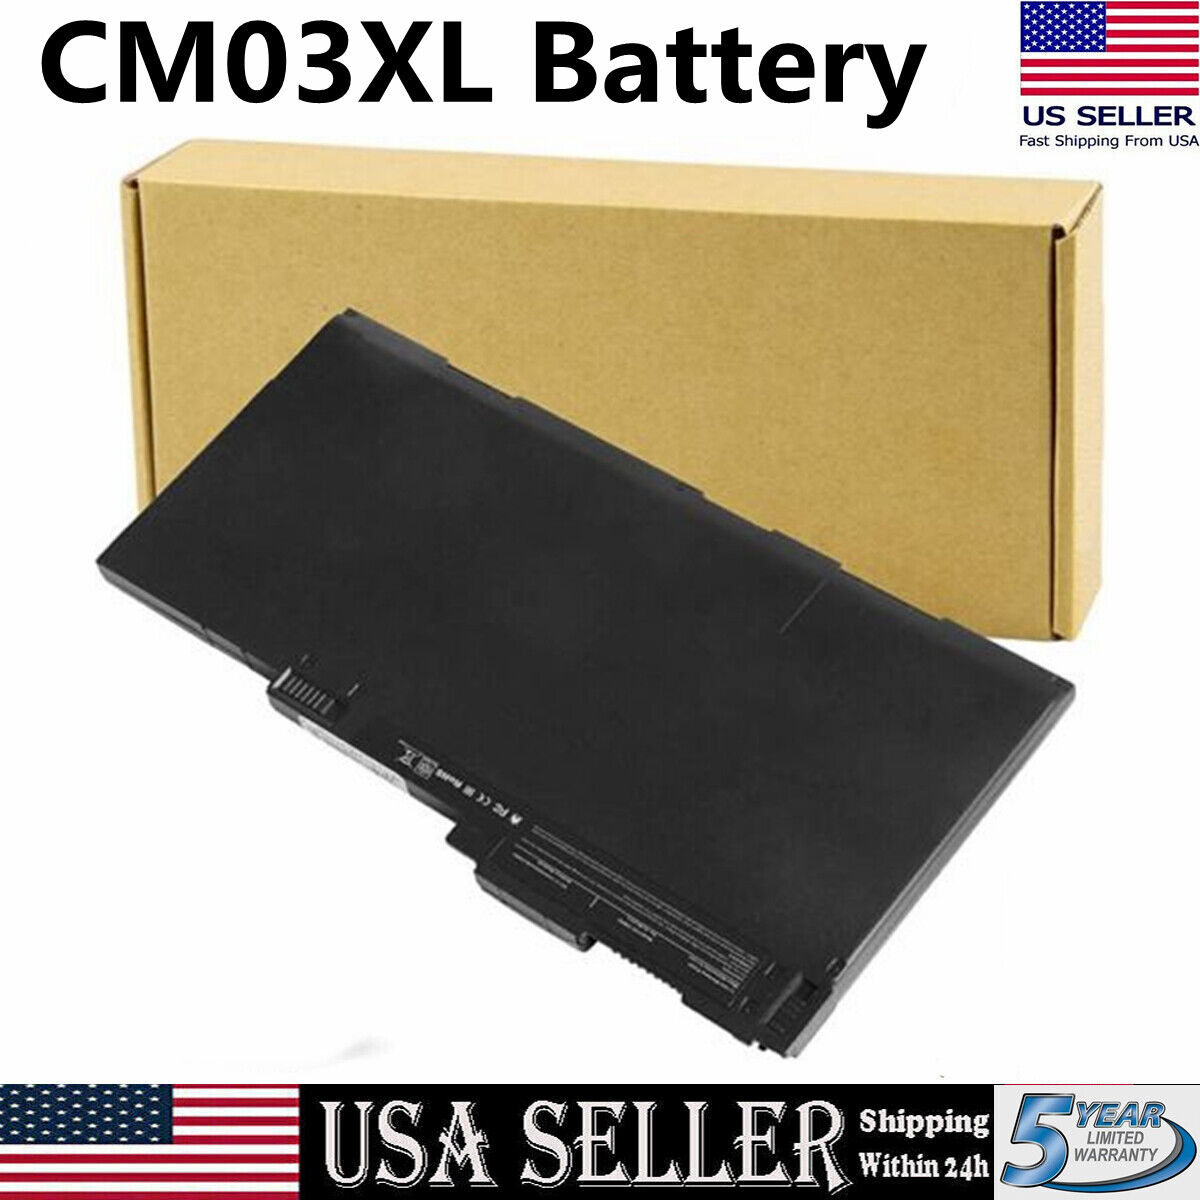 Genuine CM03XL Battery for HP Elitebook 840 845 850 740 745 750 G1G2 717376-001